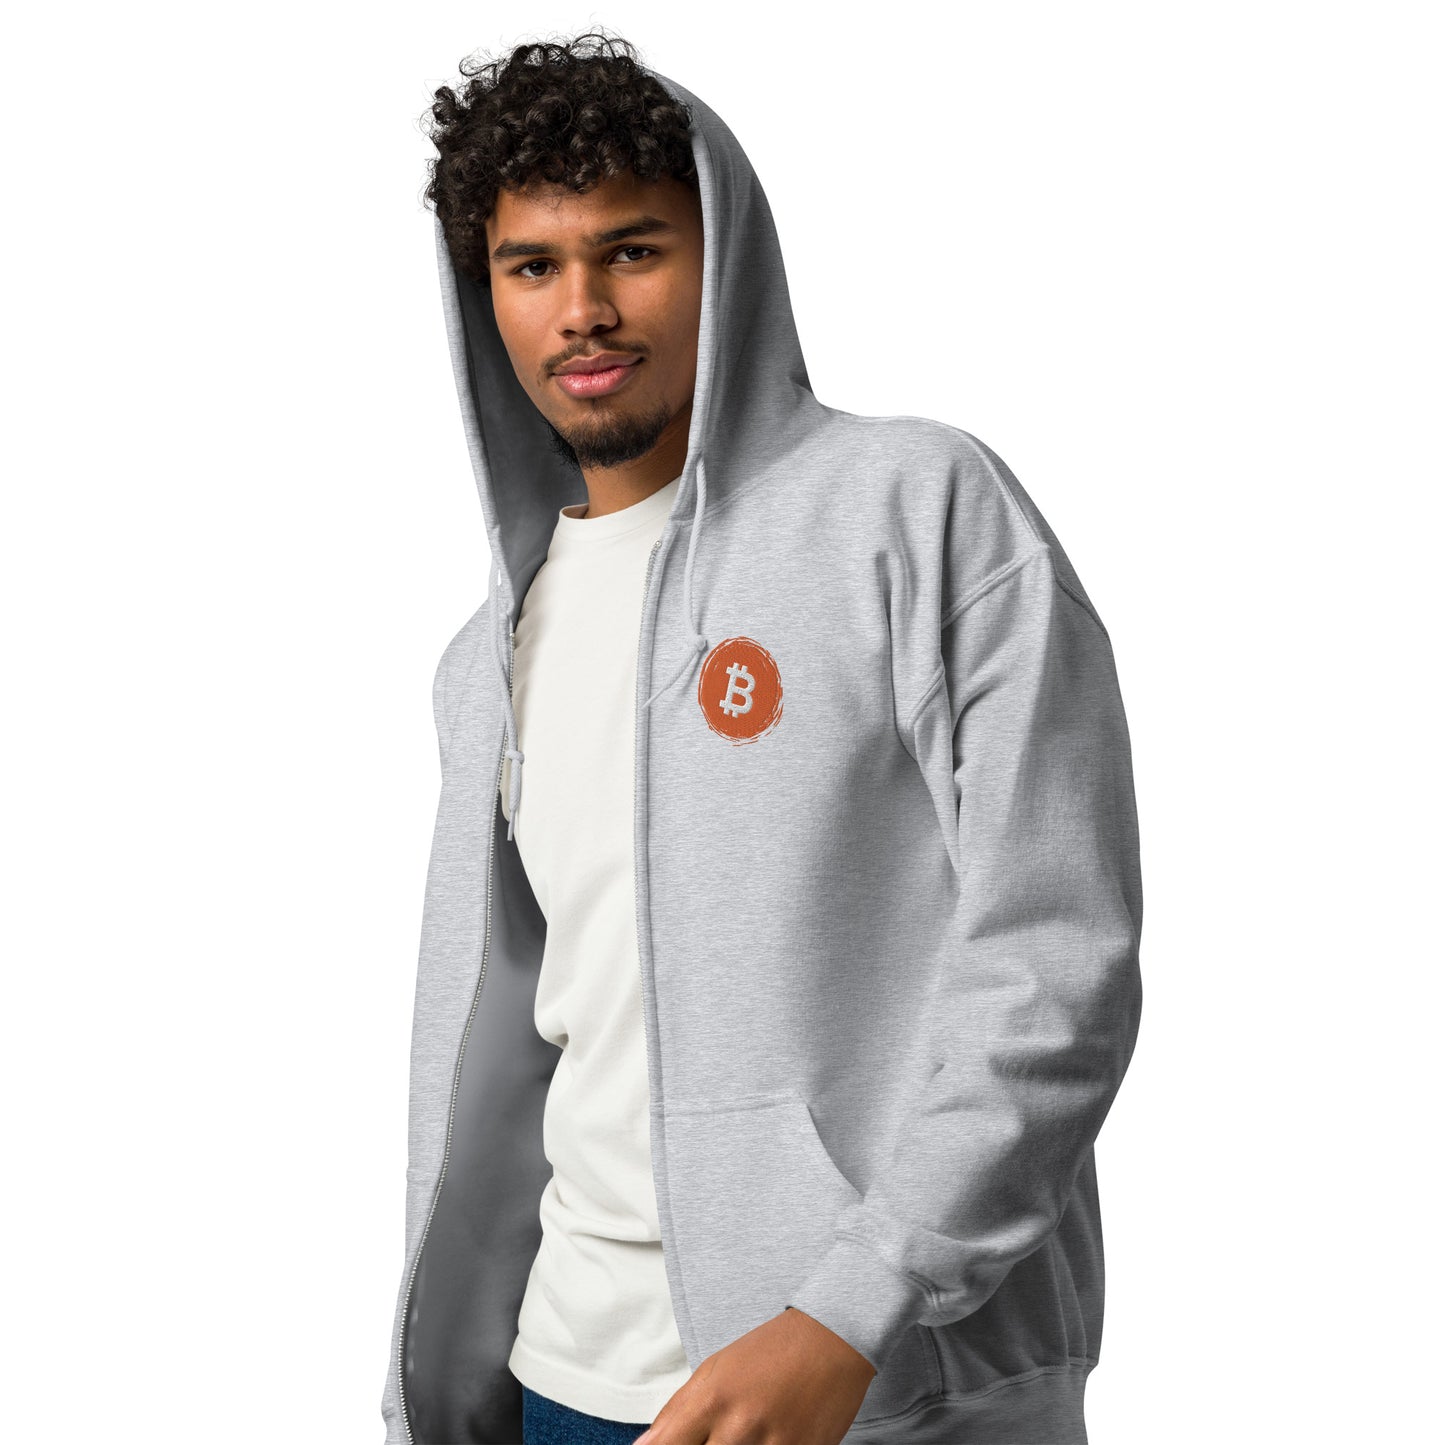 Bitcoin Unisex heavy blend zip hoodie